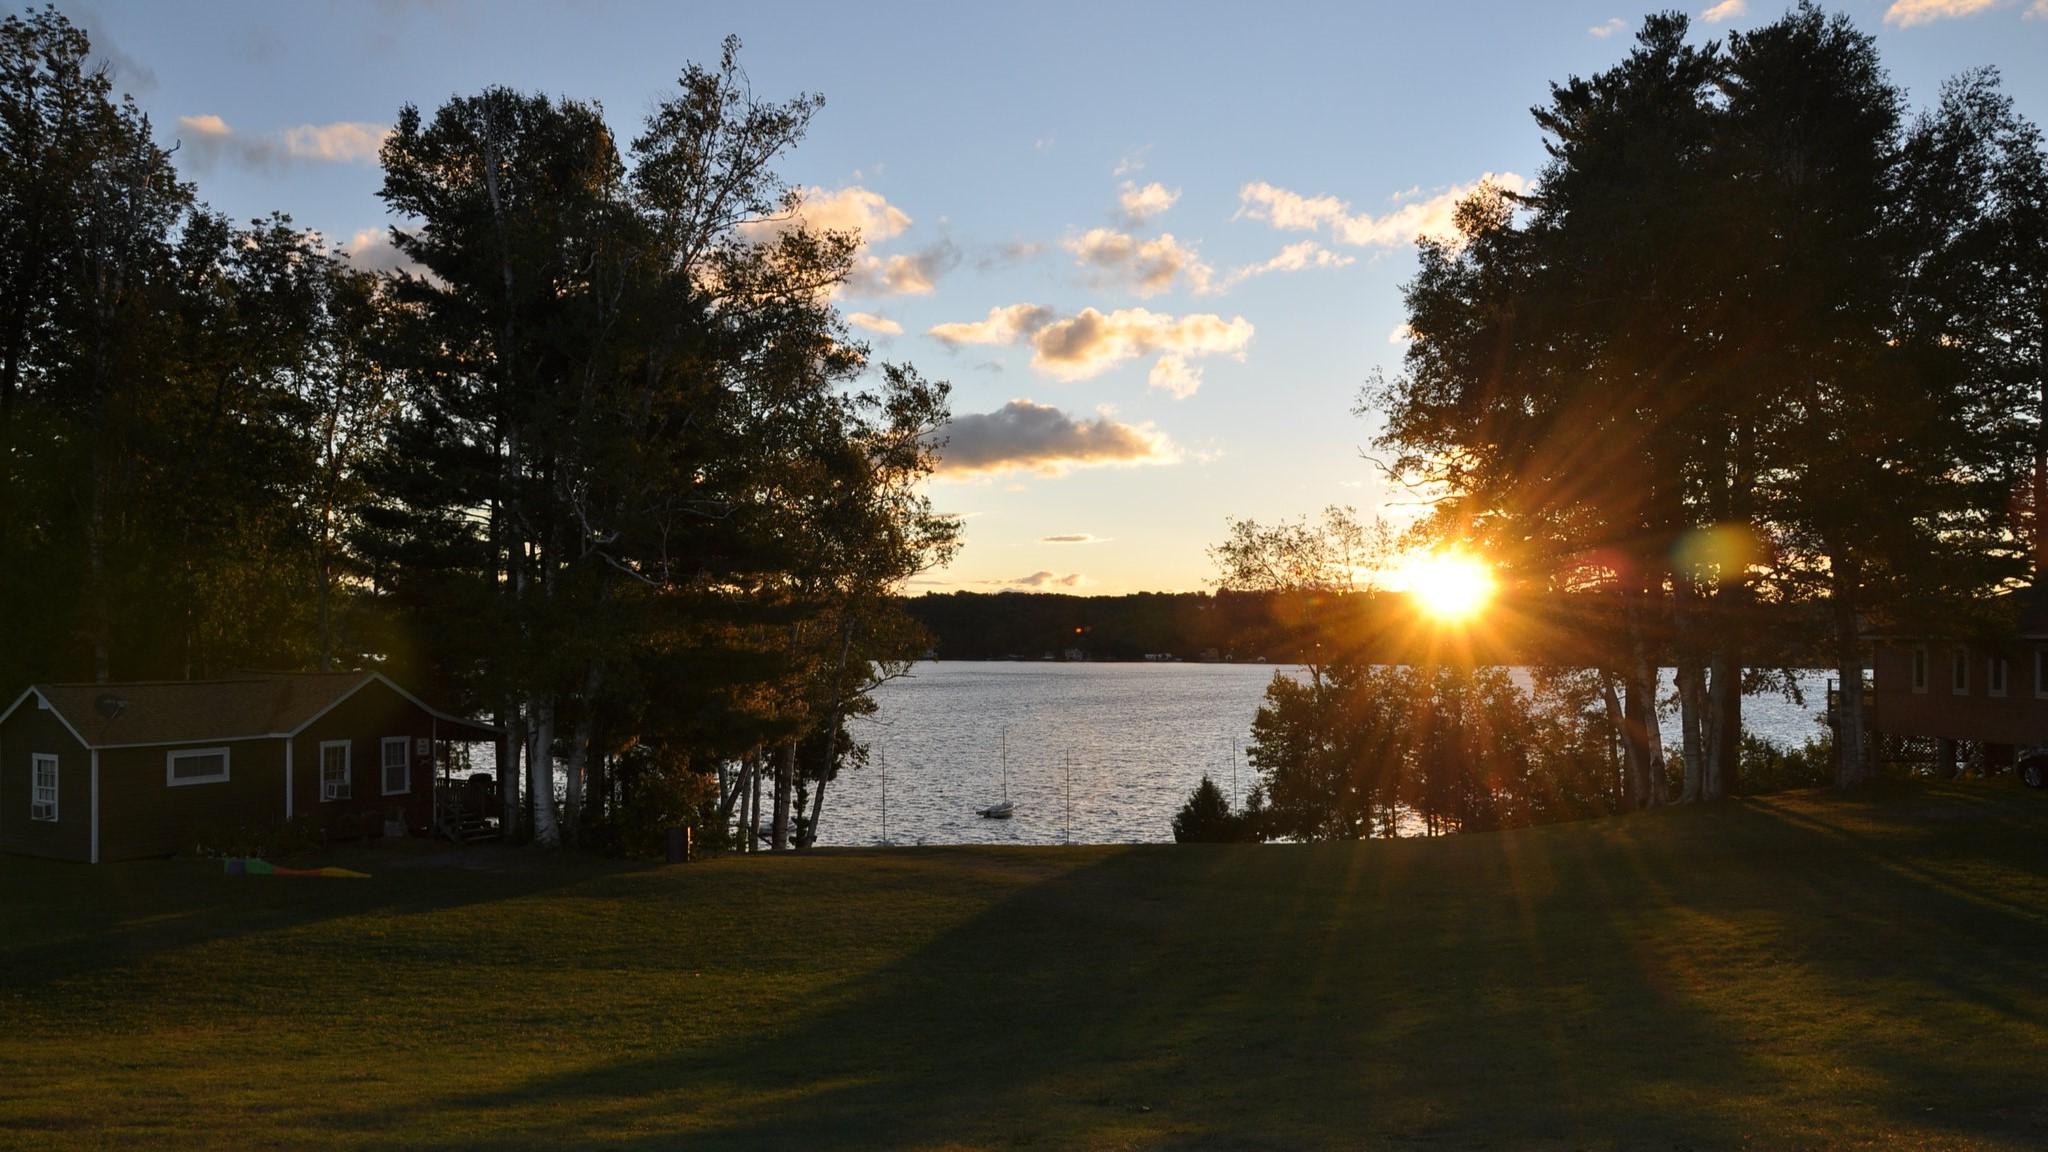 夕阳落在湖滨的景色上, 有一个小木屋, 绿色的草坪, 还有岸边的树木